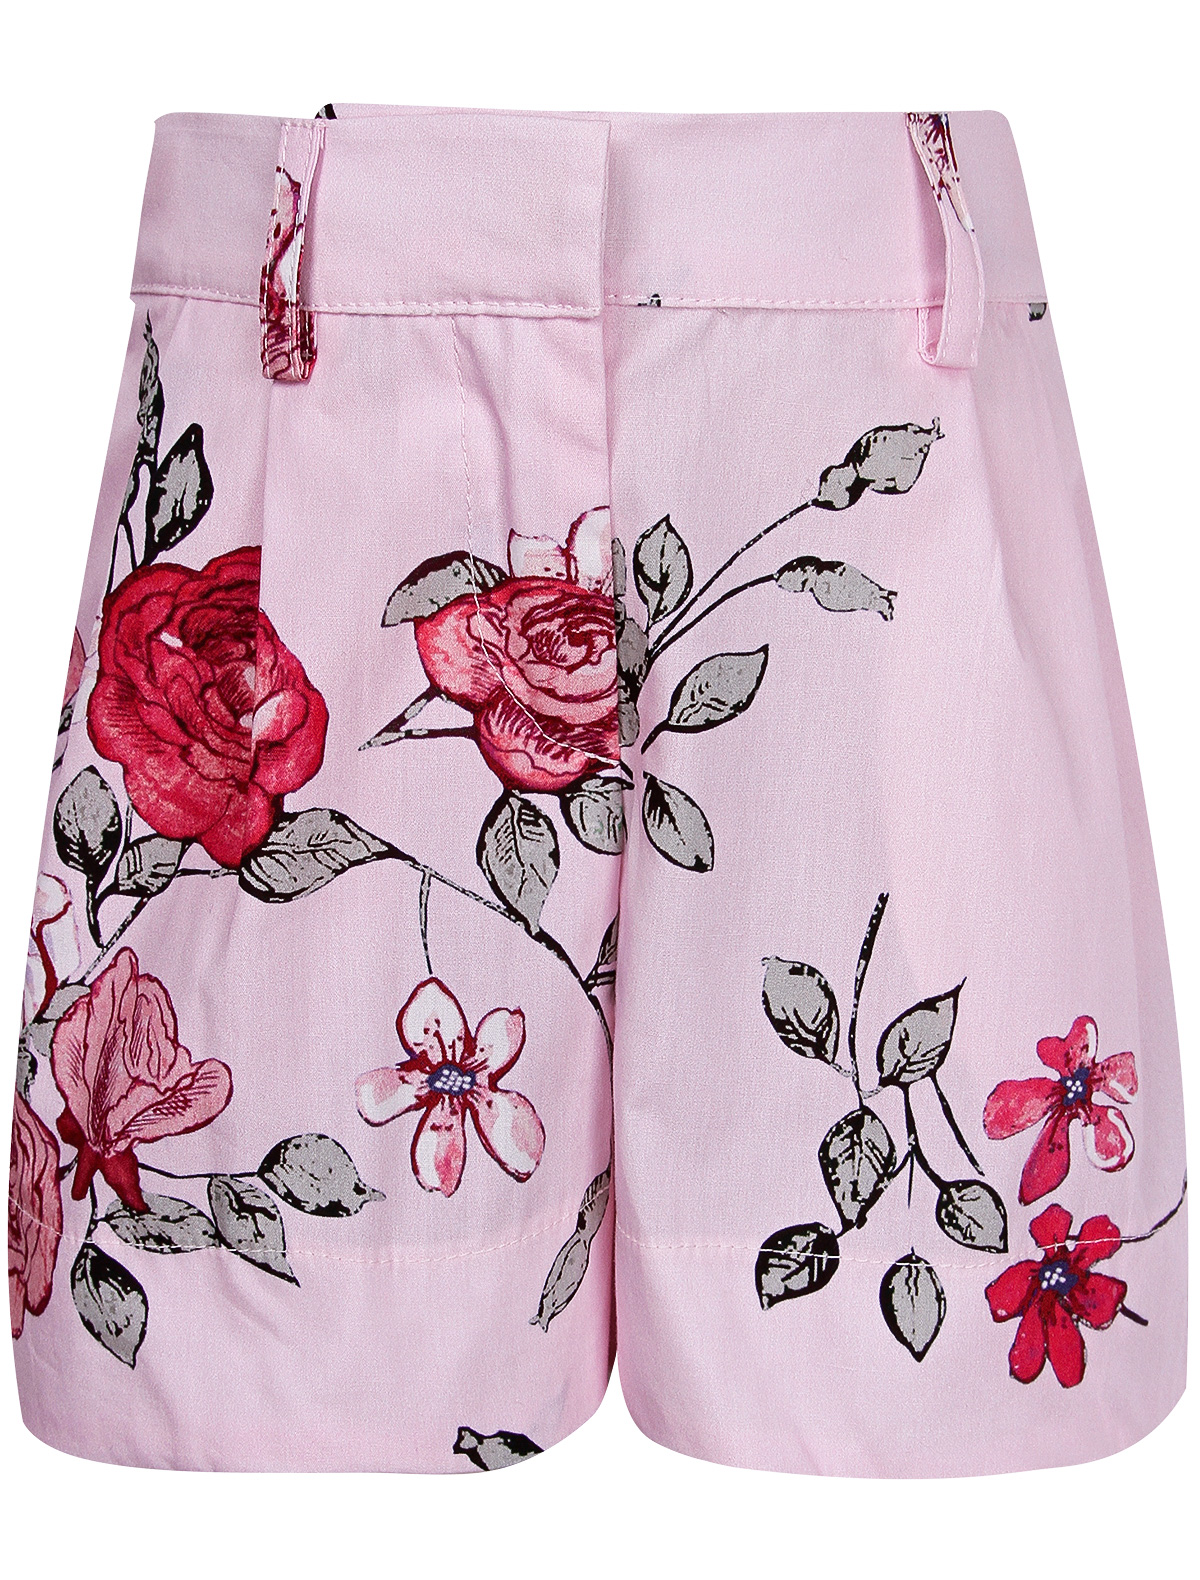 шорты simonetta для девочки, розовые